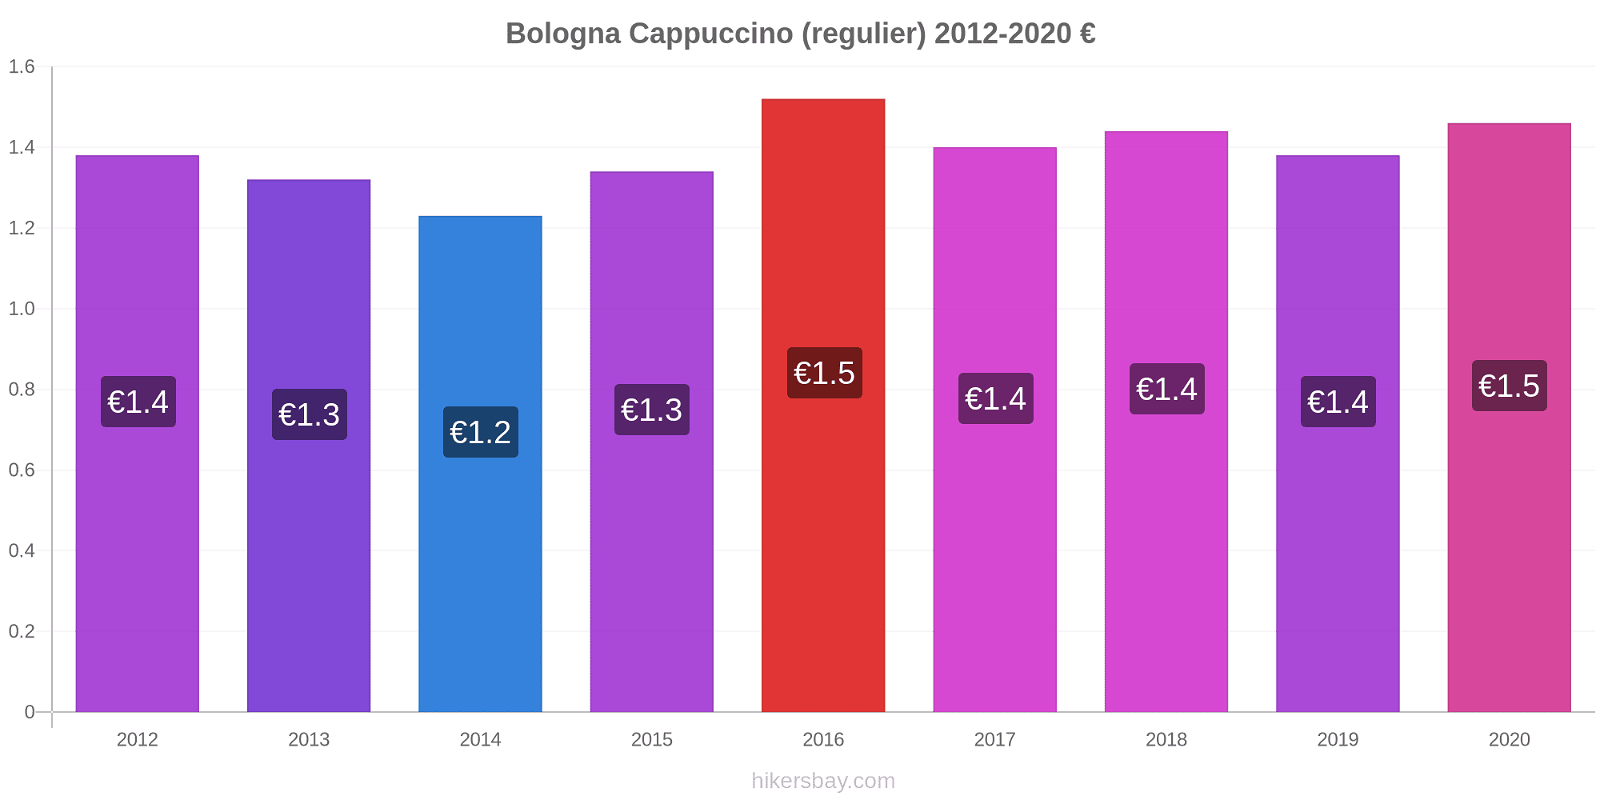 Bologna prijswijzigingen Cappuccino (regelmatige) hikersbay.com